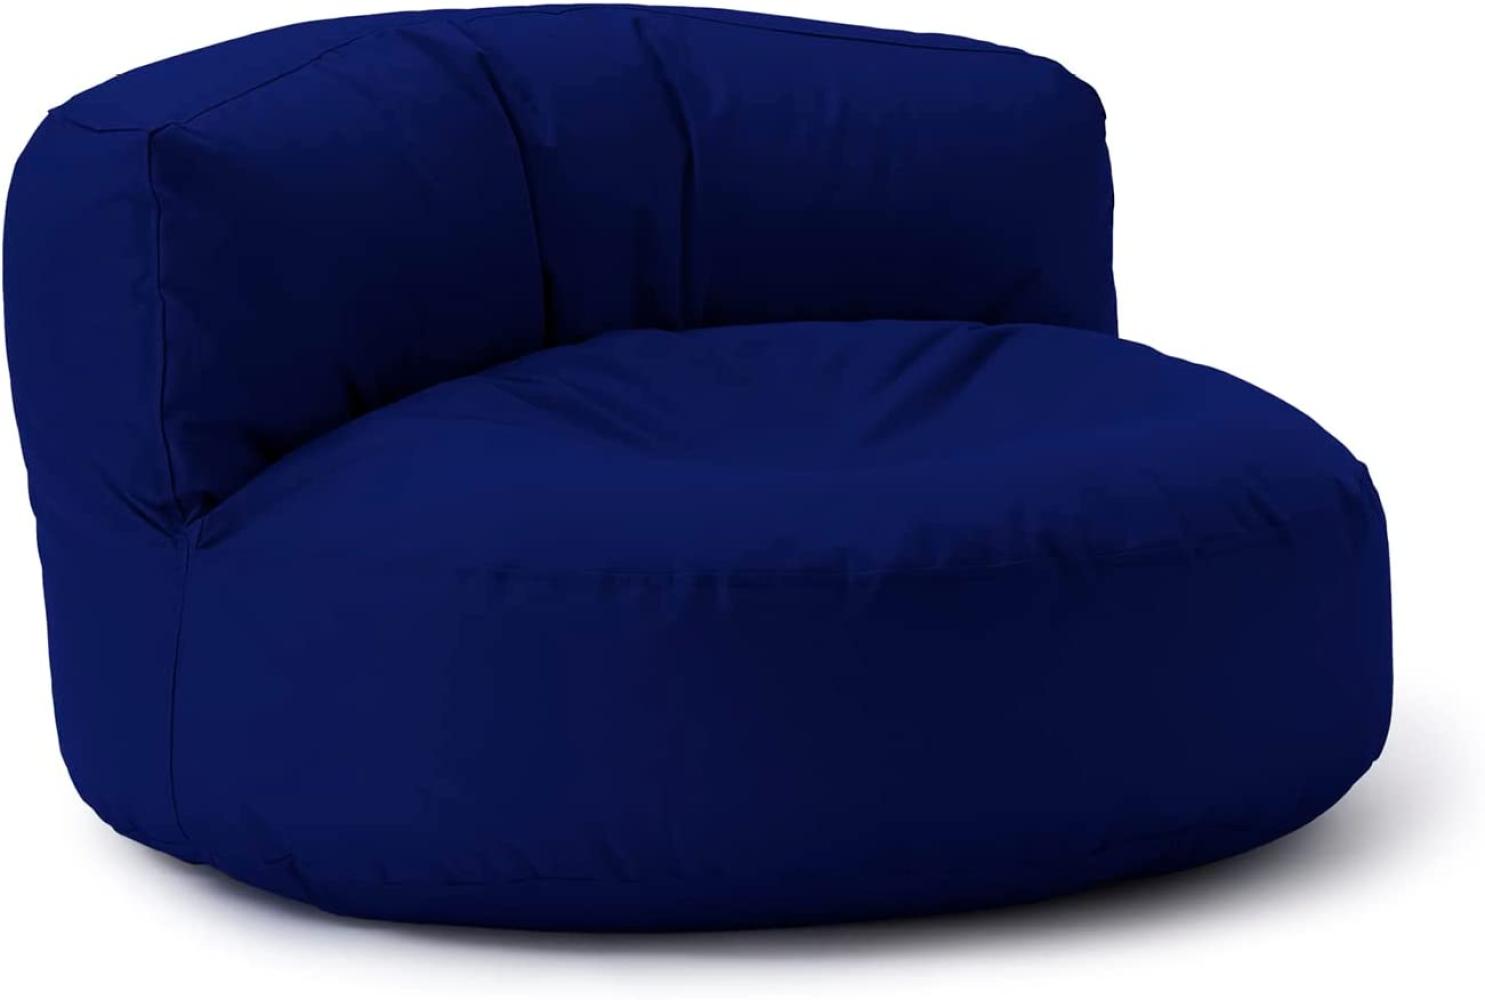 Lumaland Outdoor Sitzsack-Lounge, Rundes Sitzsack-Sofa für draußen, 320l Füllung, 90 x 50 cm, Dunkelblau Bild 1